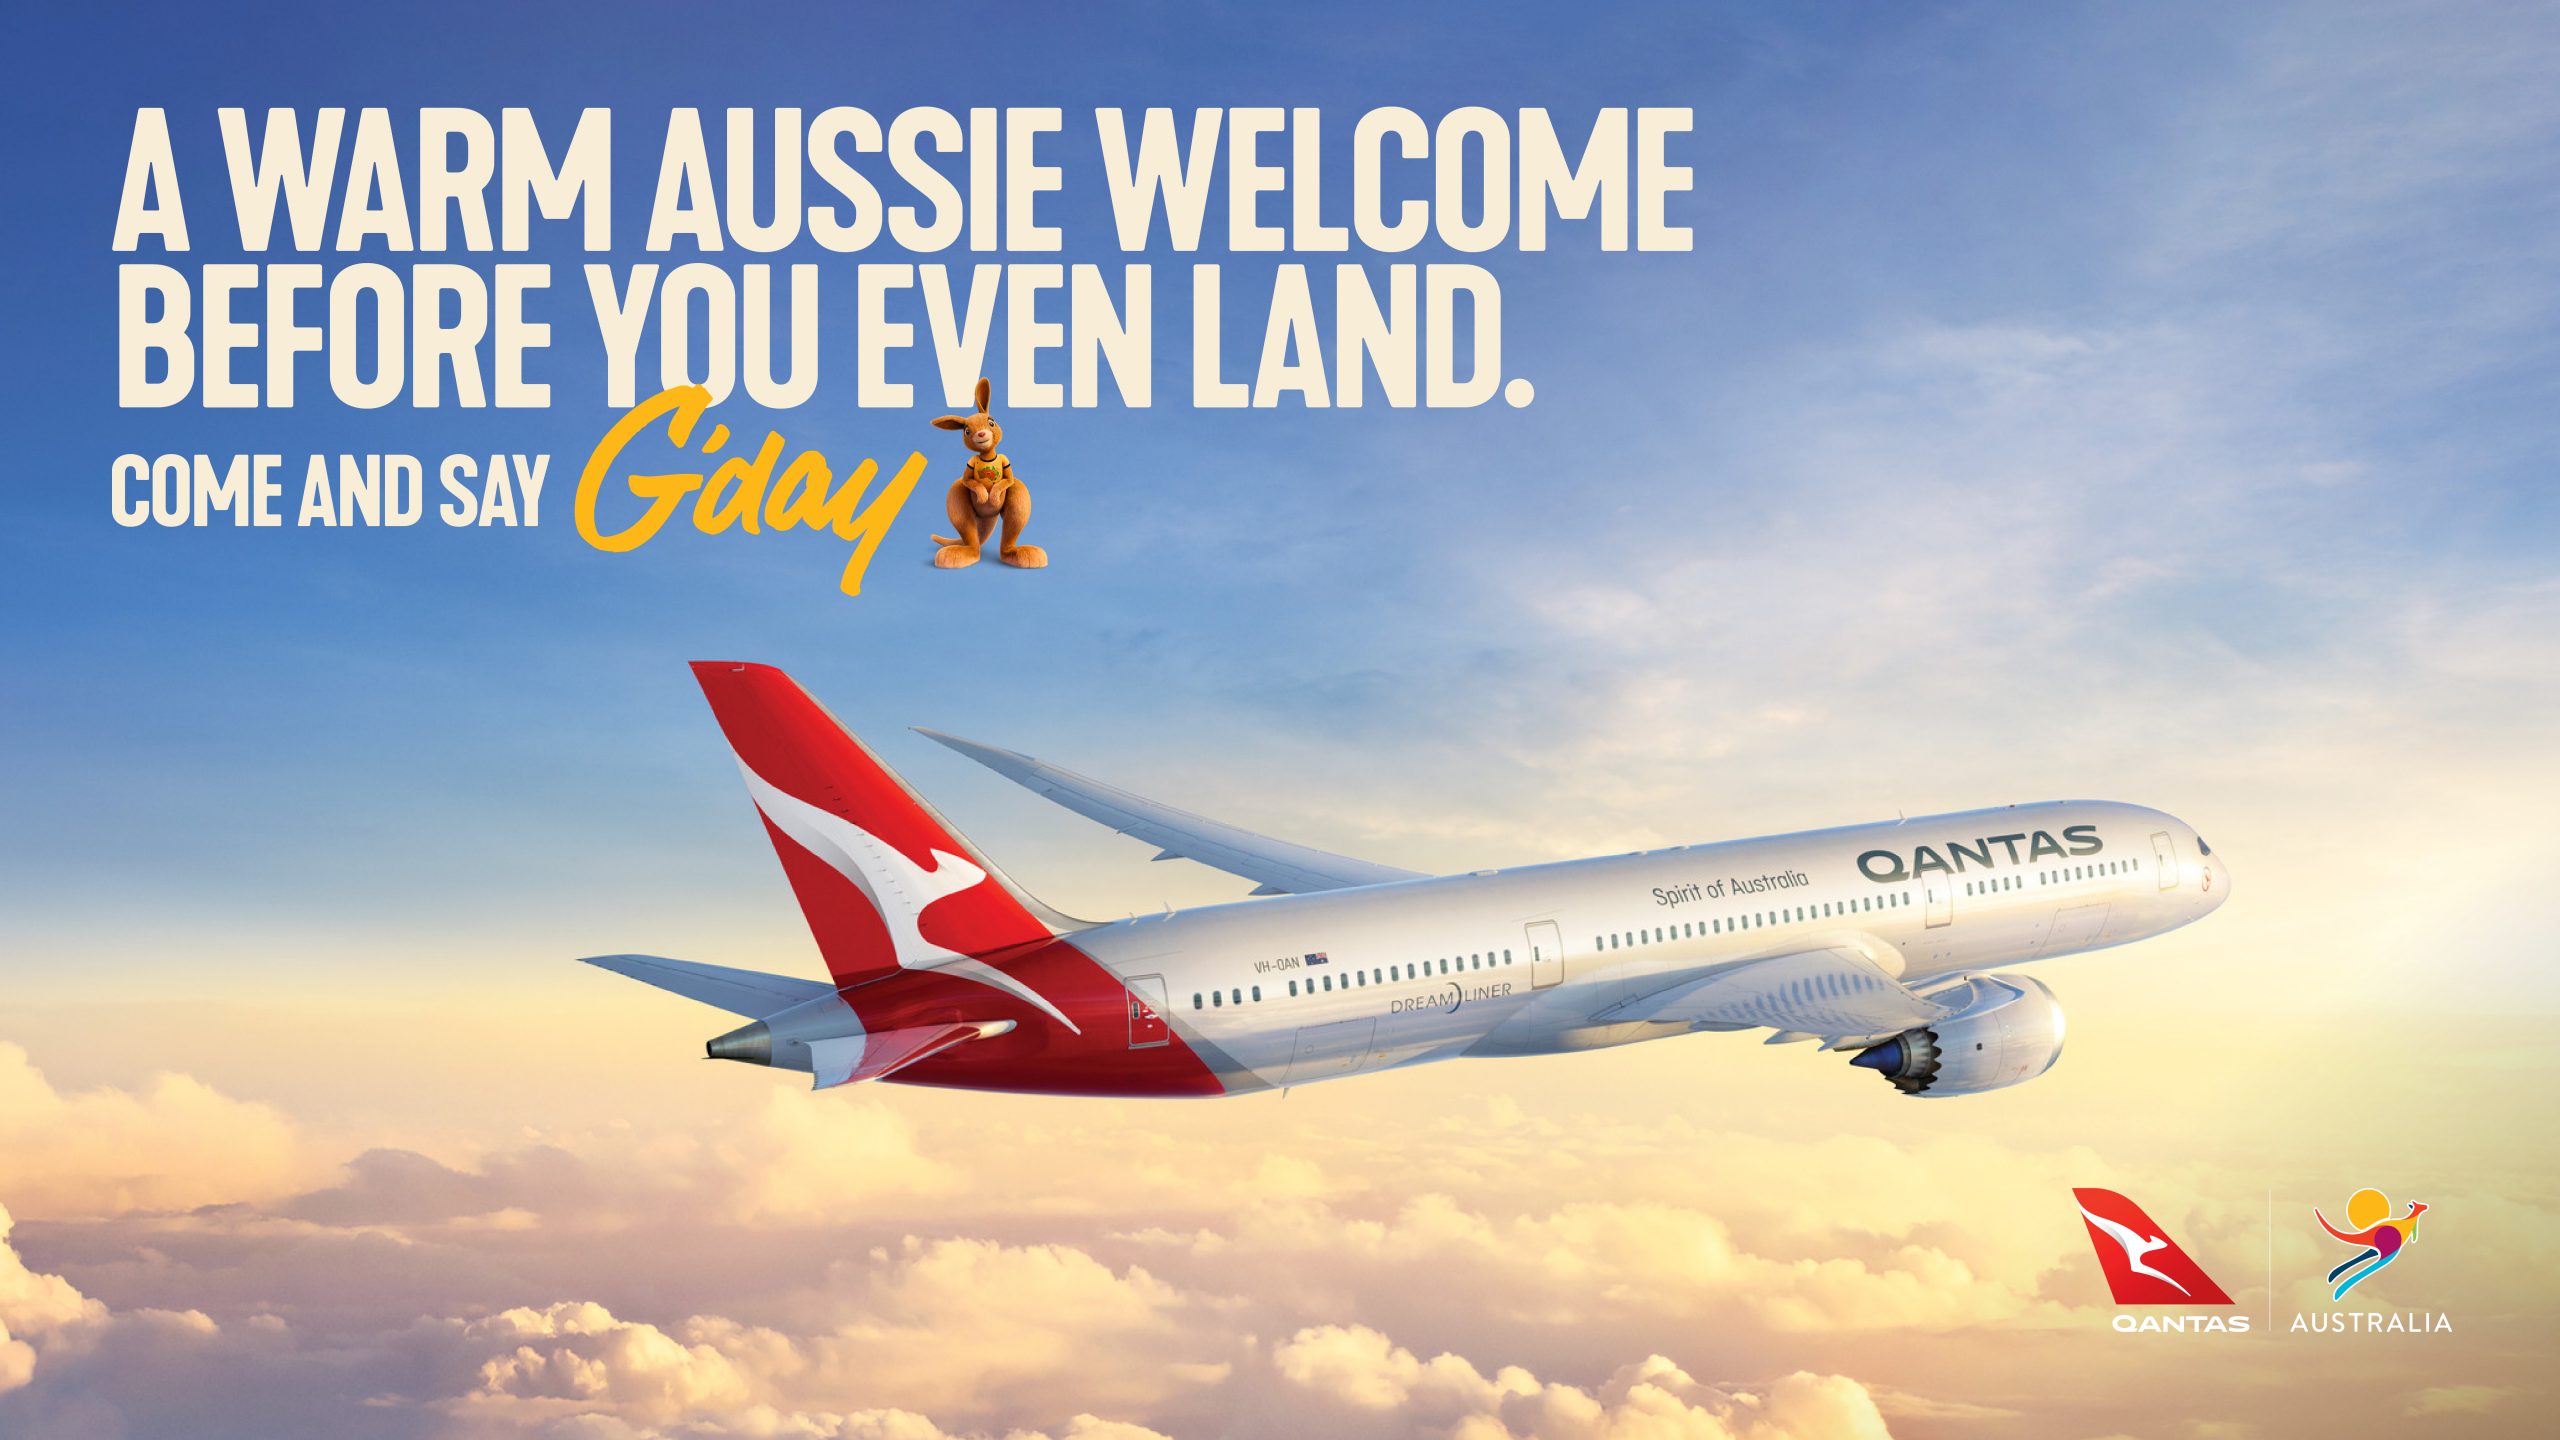 qantas.com staff travel